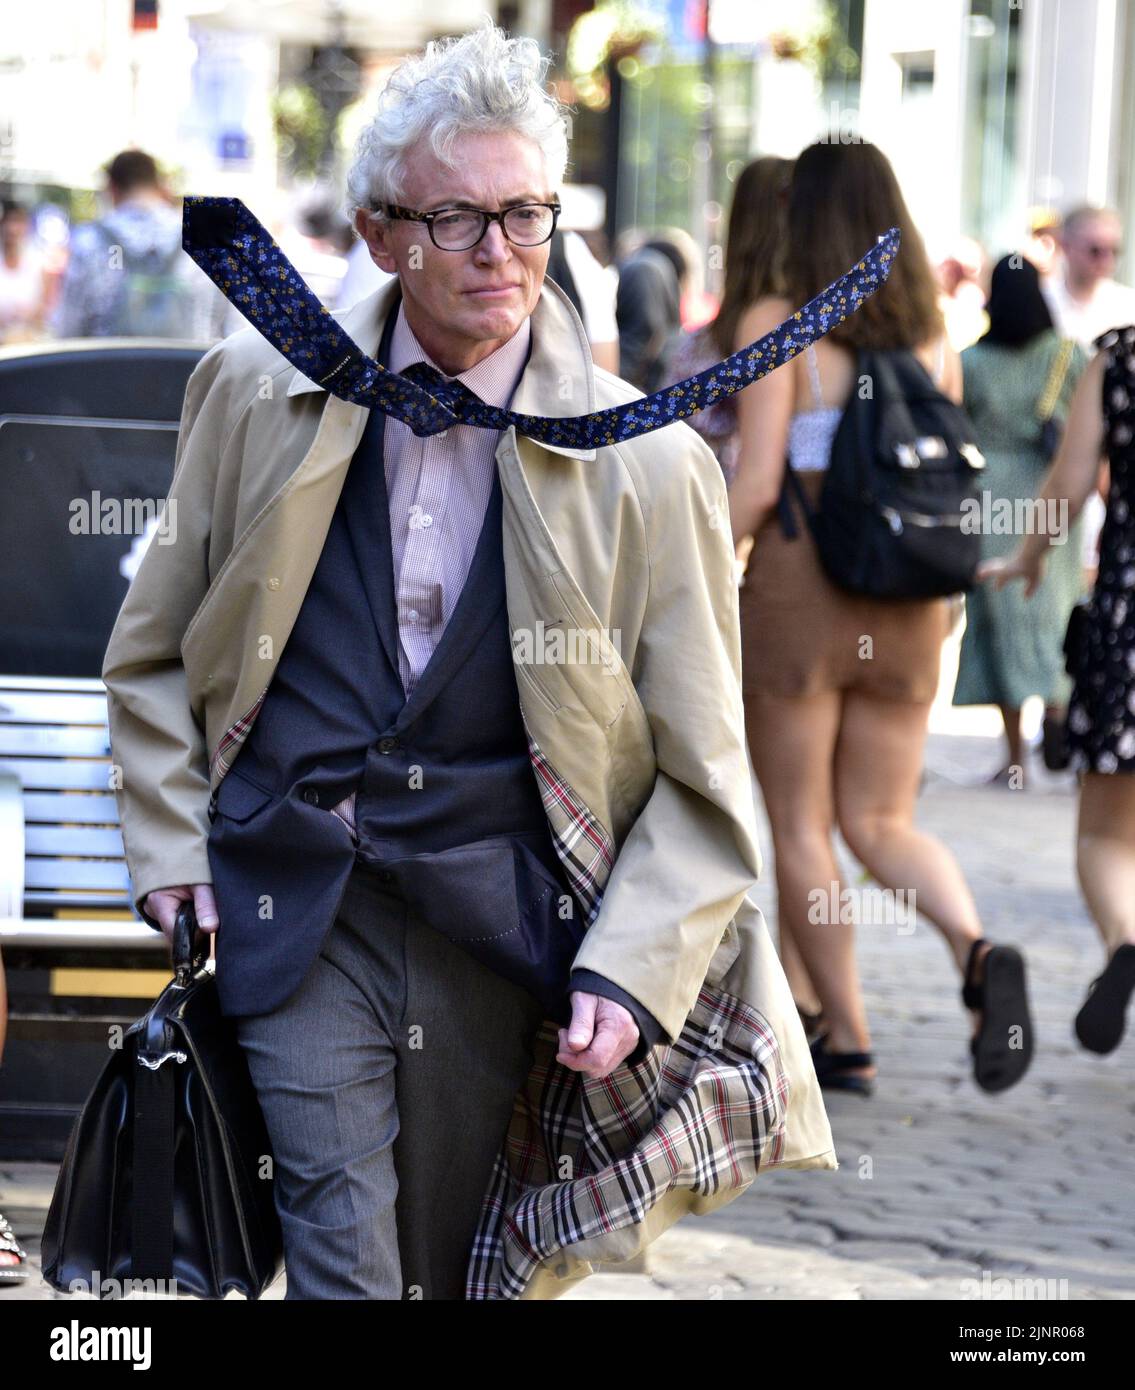 Un homme plus âgé, portant un manteau et un gilet, avec une cravate qui tourne à un angle inhabituel, pose pour attendre des dons dans le centre de Manchester, Royaume-Uni, îles britanniques. Banque D'Images